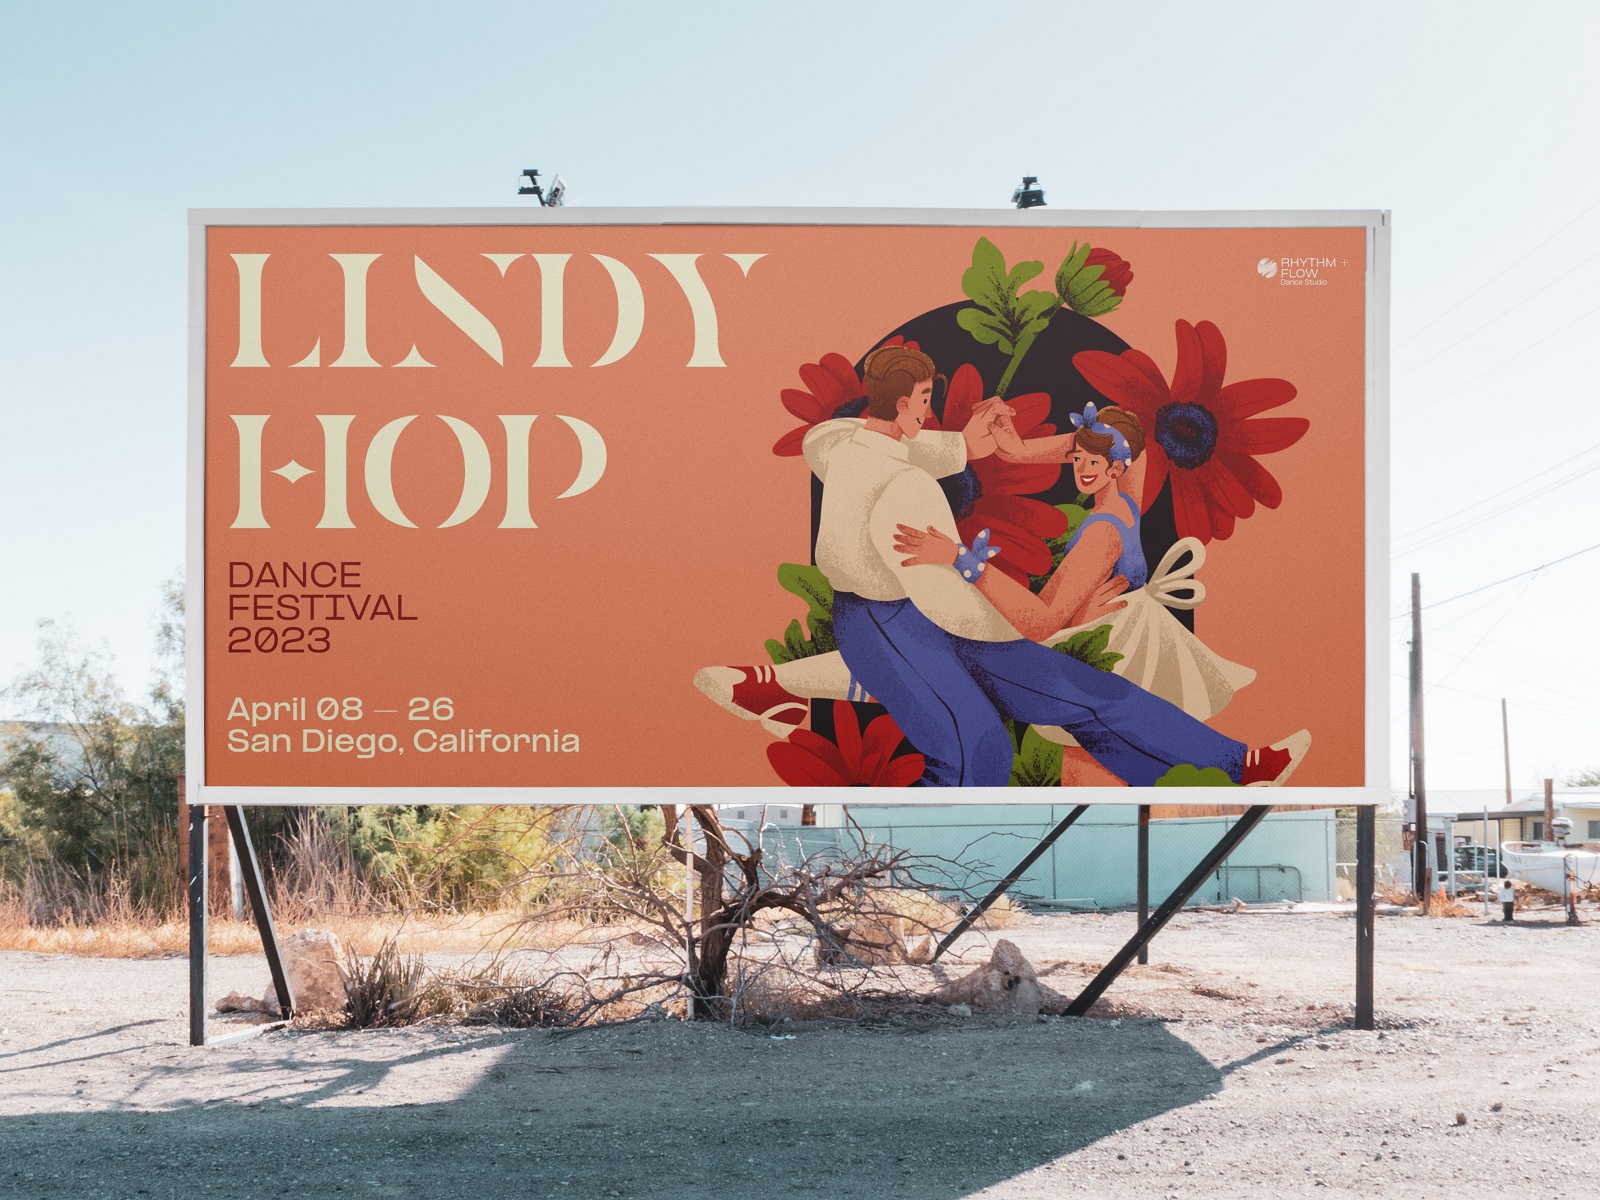 dance festival poster design Lindy hop tubikarts